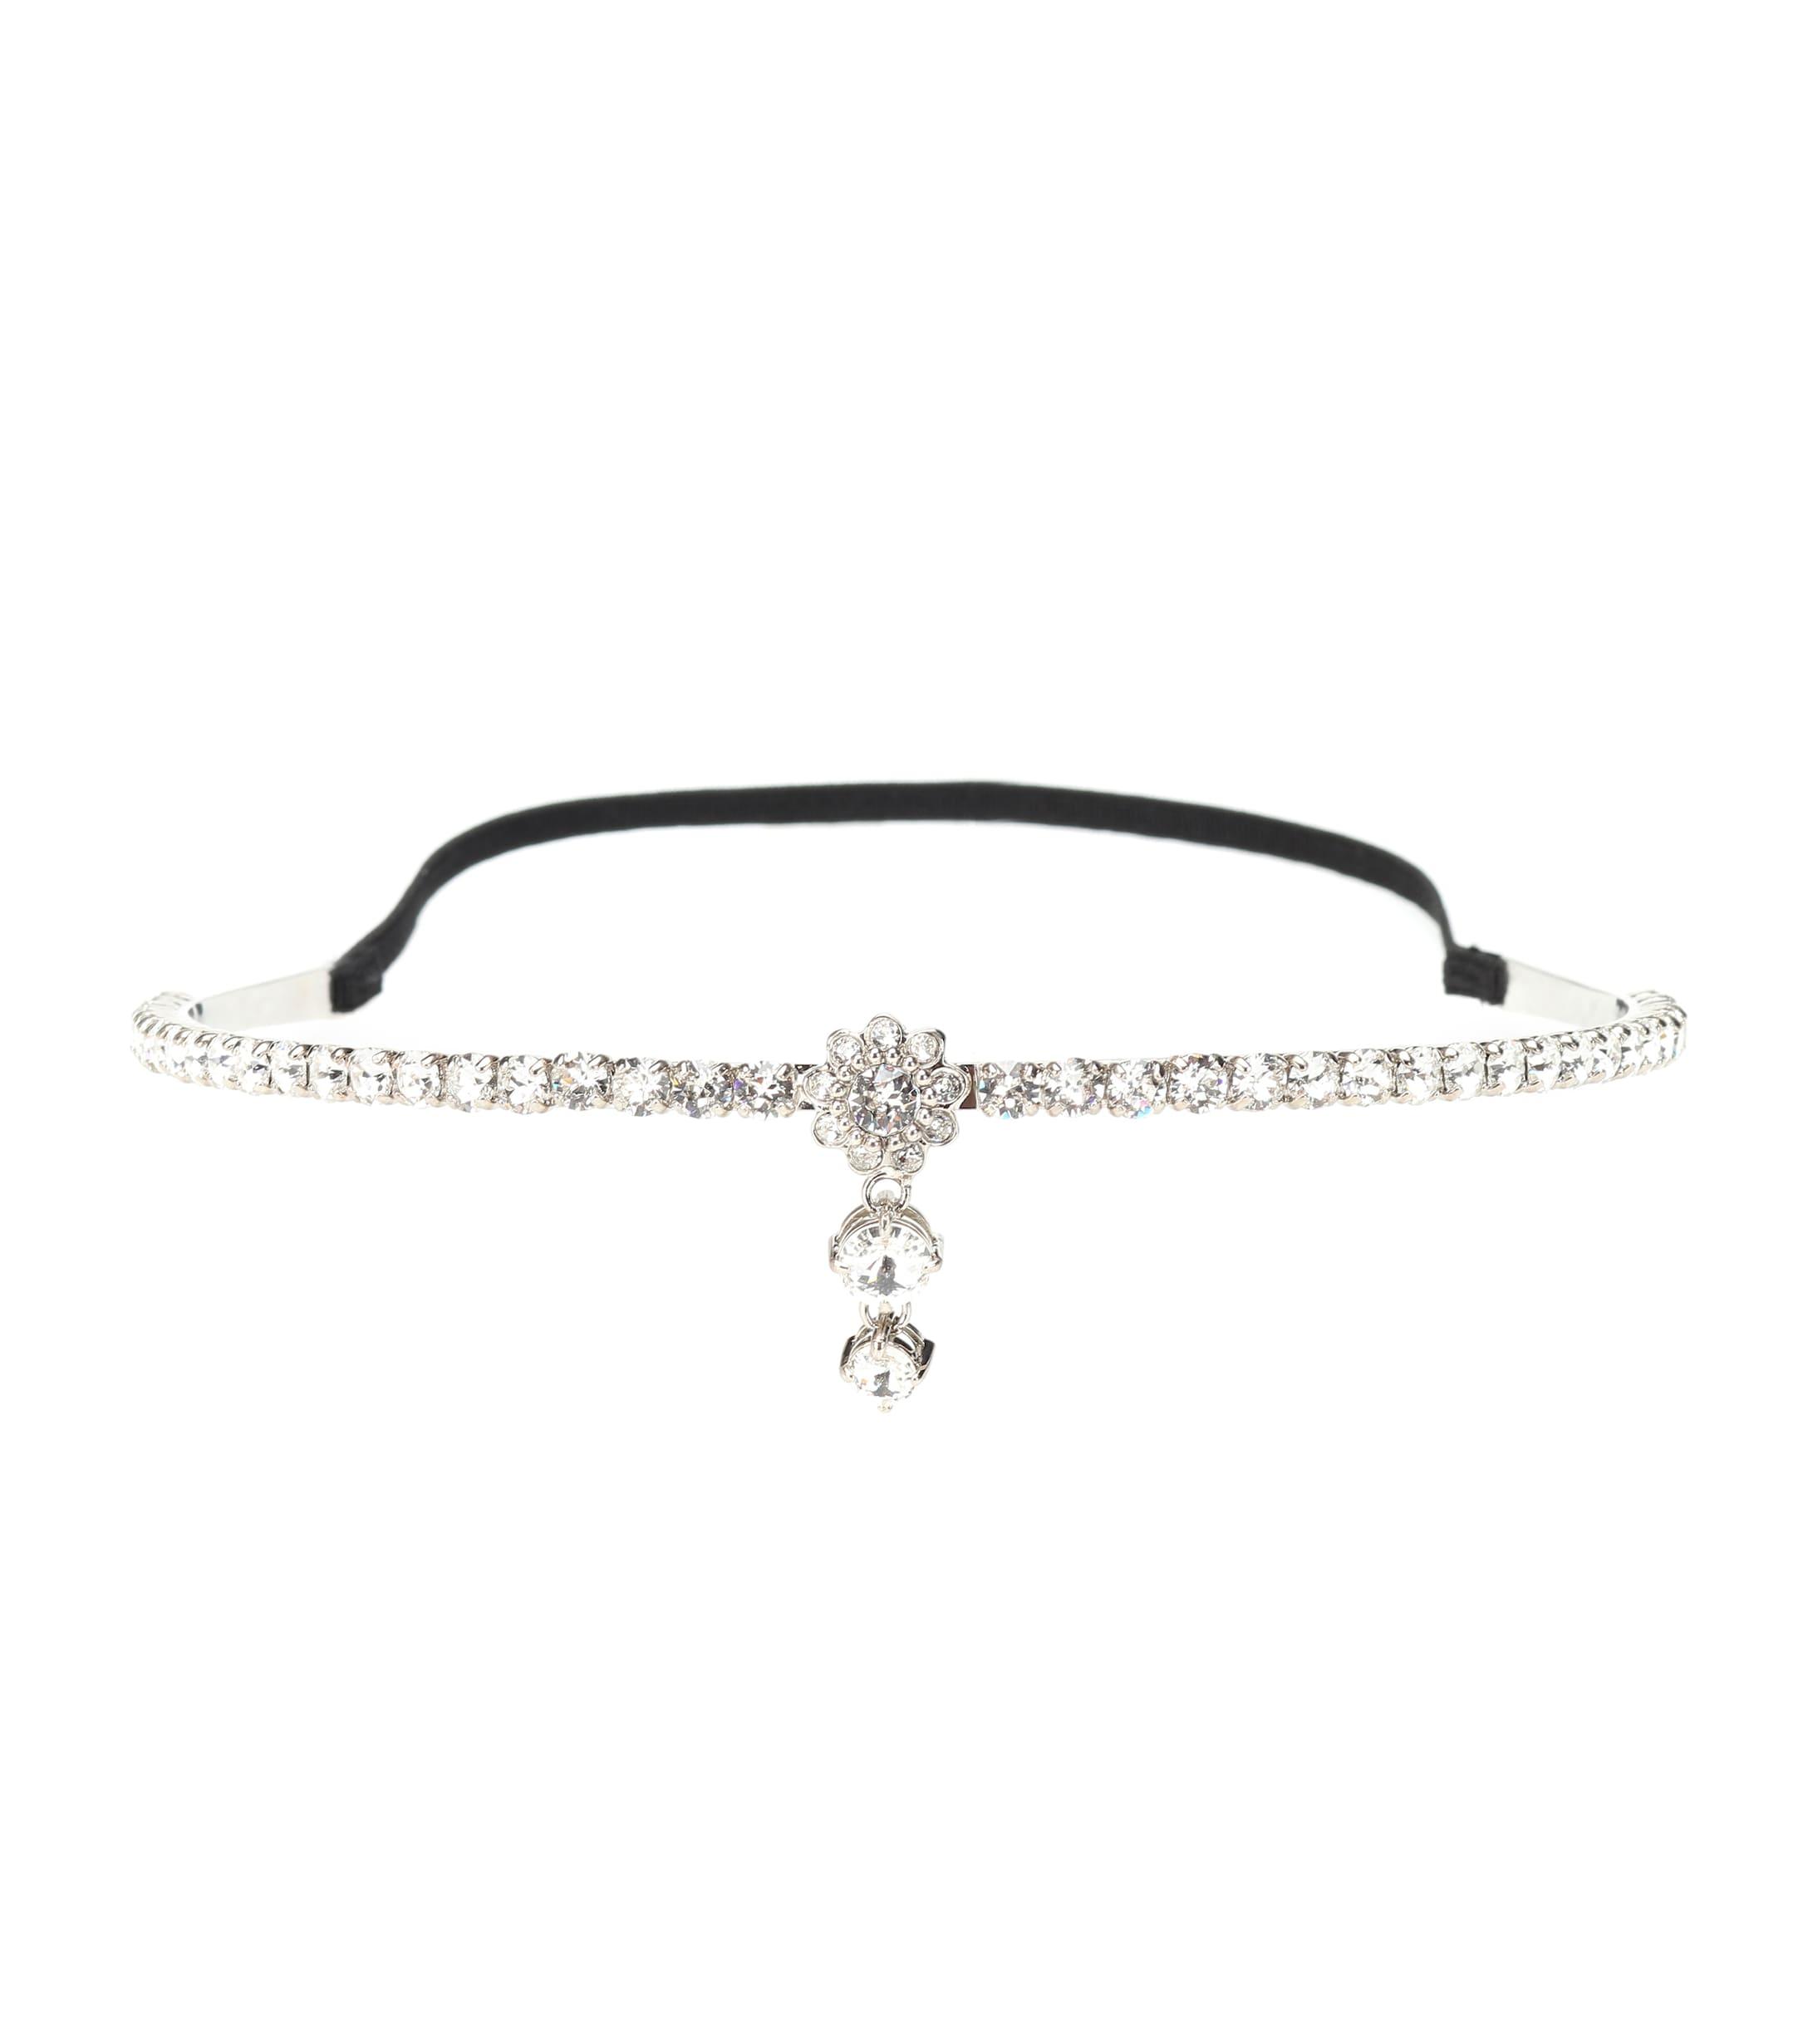 Miu Miu Crystal Embellished Headband in Black - Lyst